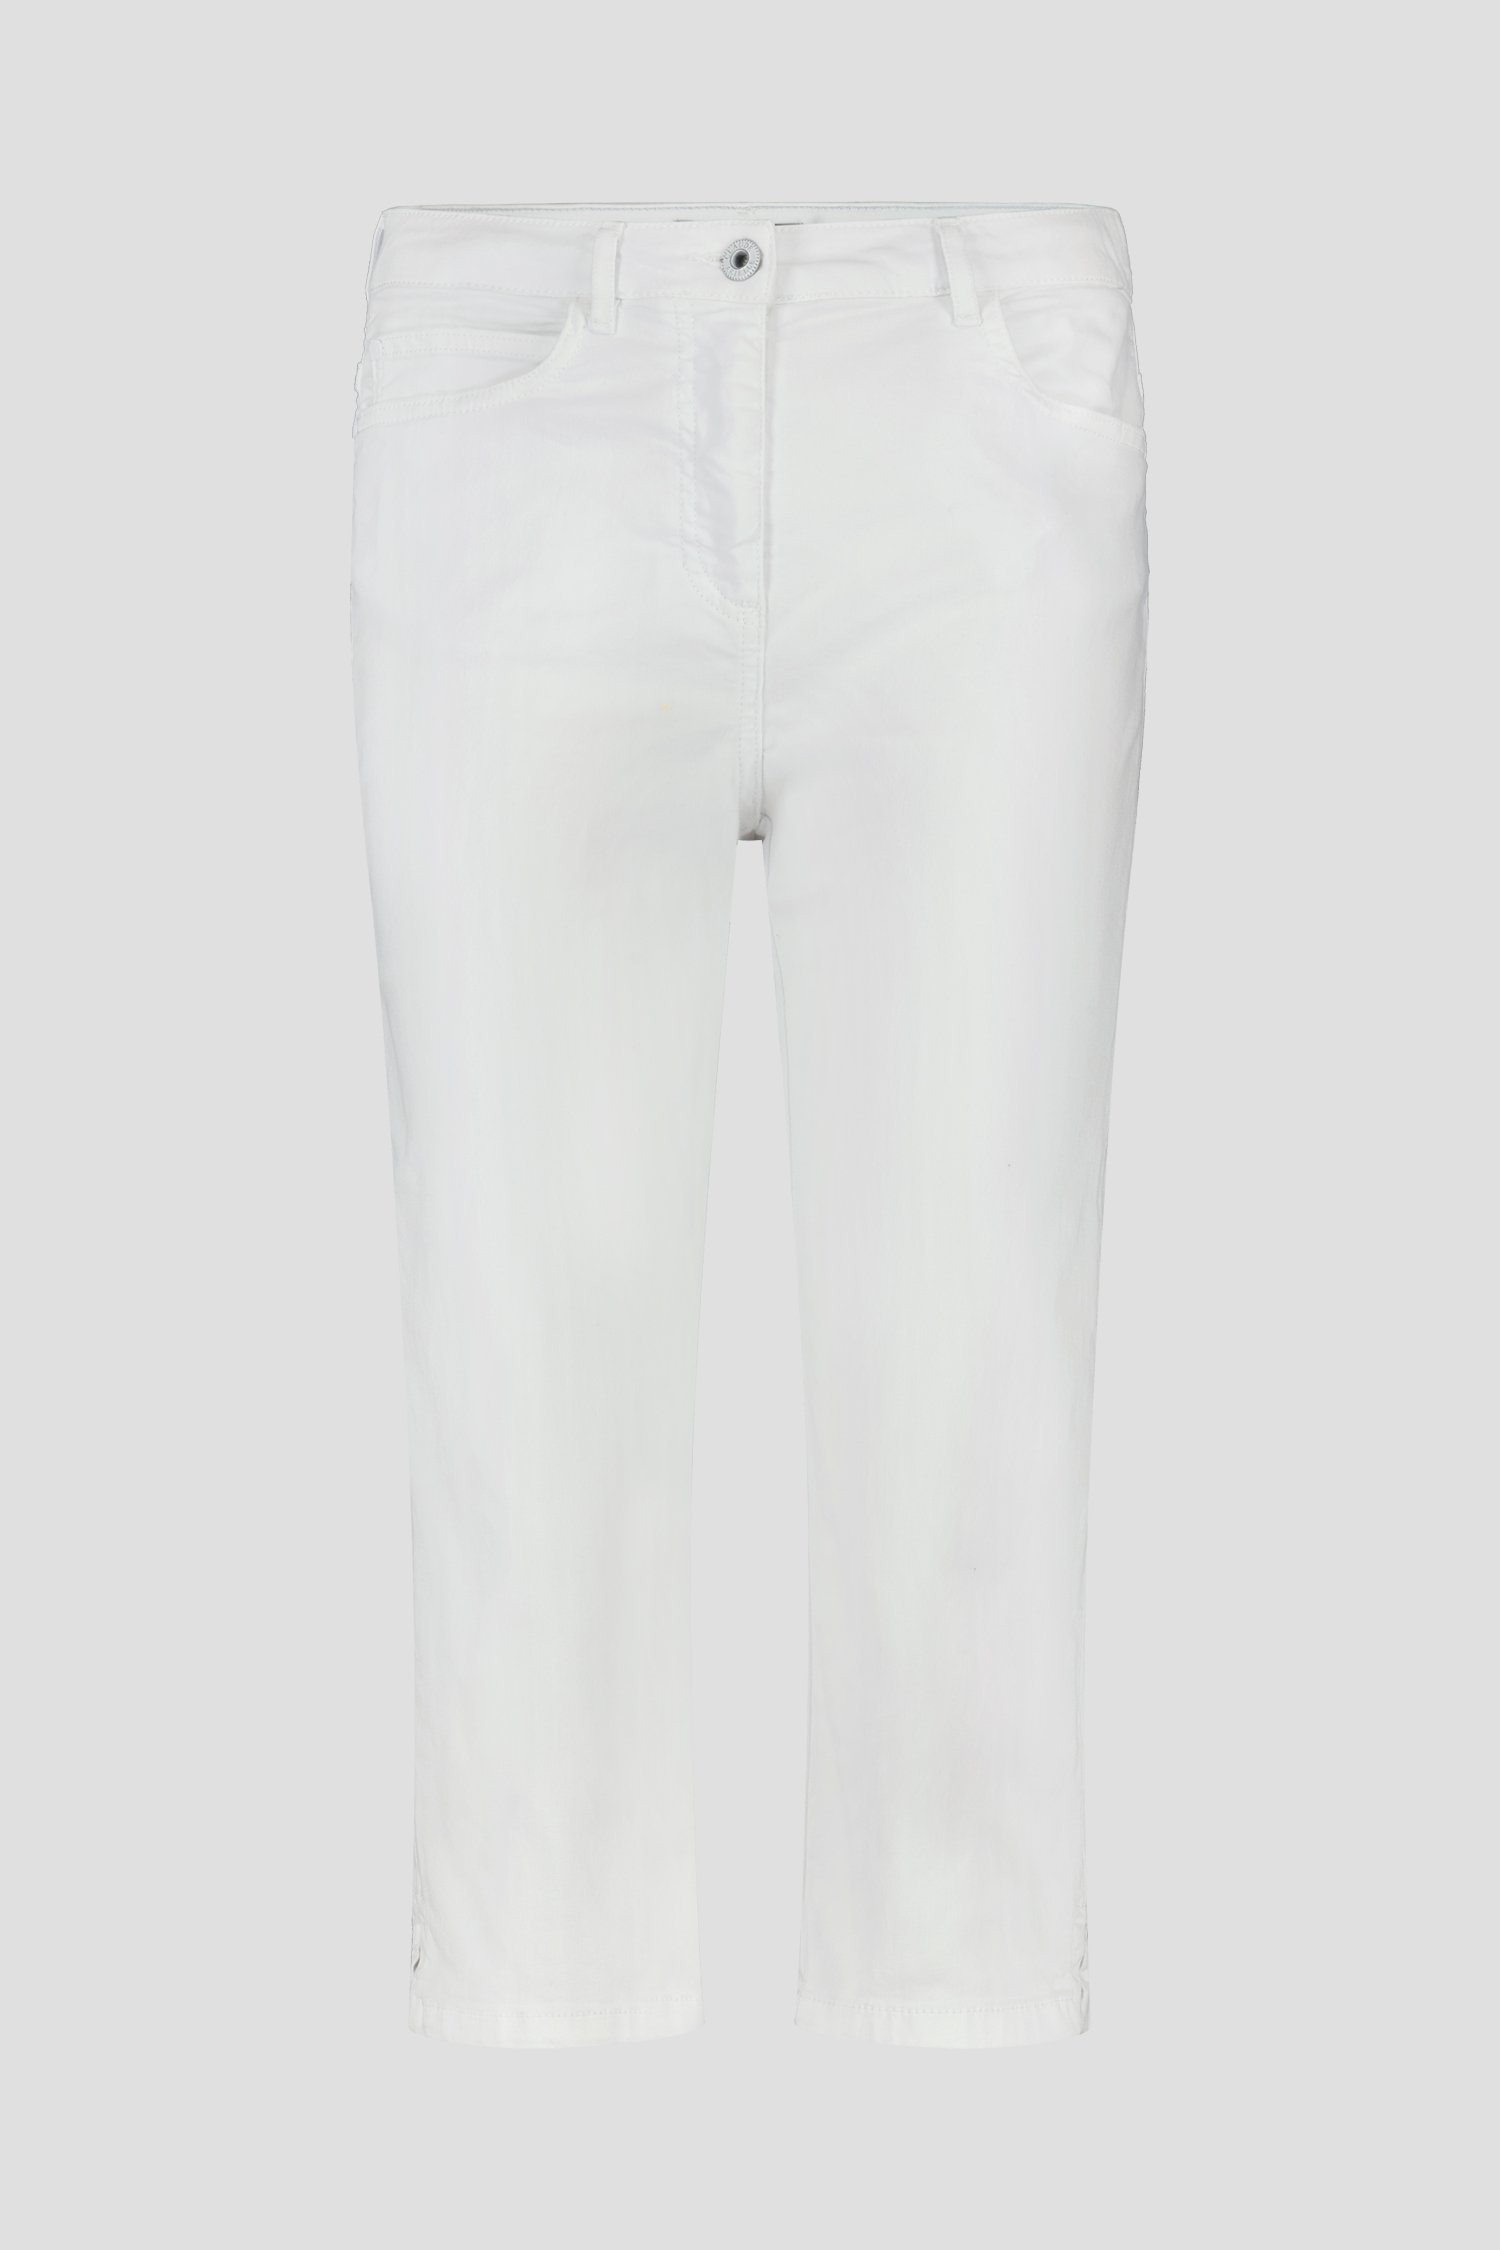 Witte broek met 3/4 lengte van Claude Arielle voor Dames